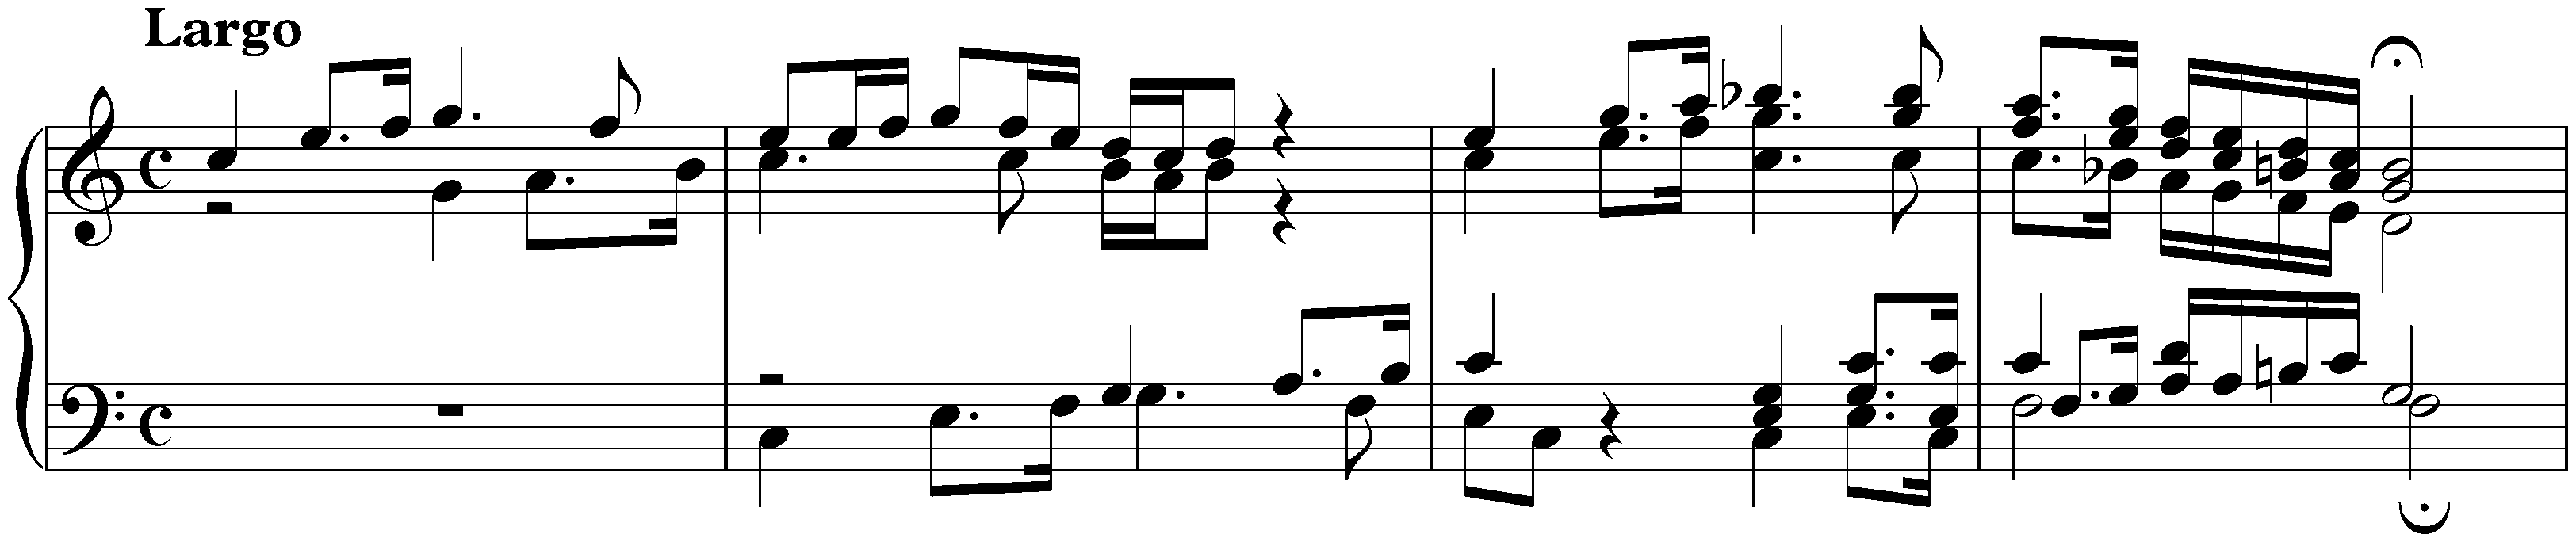 Concerto in C major after Antonio Vivaldi, BWV 976; 2. Largo